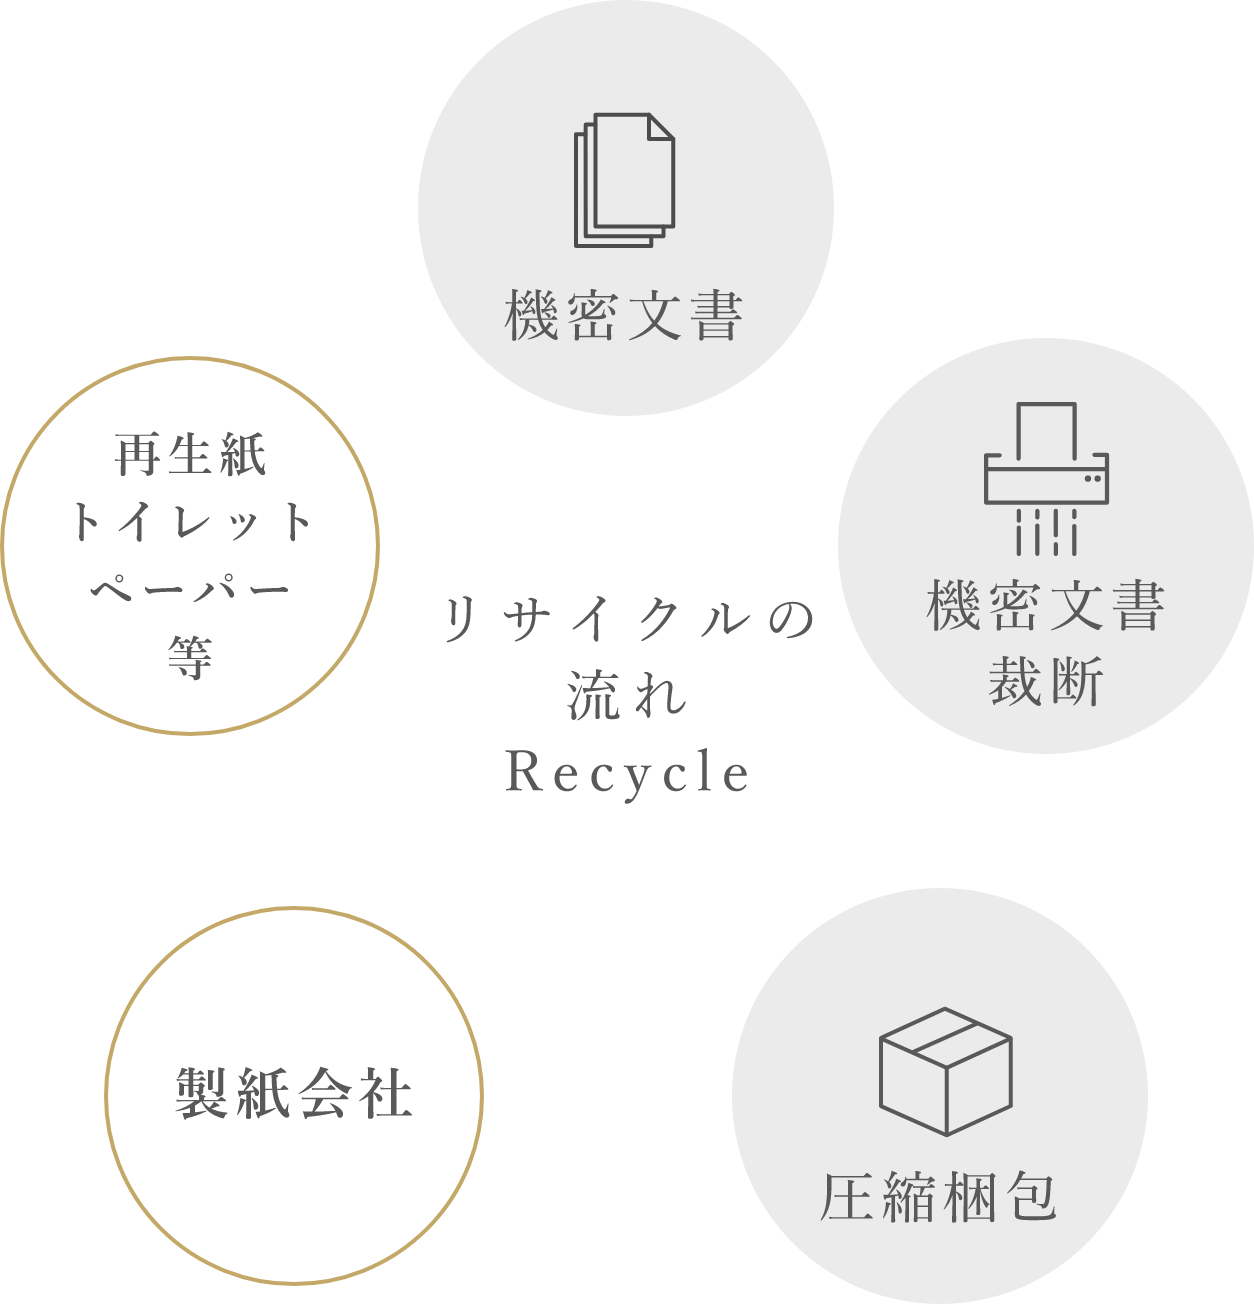 リサイクルの流れ Recycle 機密文書 機密文書裁断 圧縮梱包 製紙会社 再生紙トイレットペーパー等